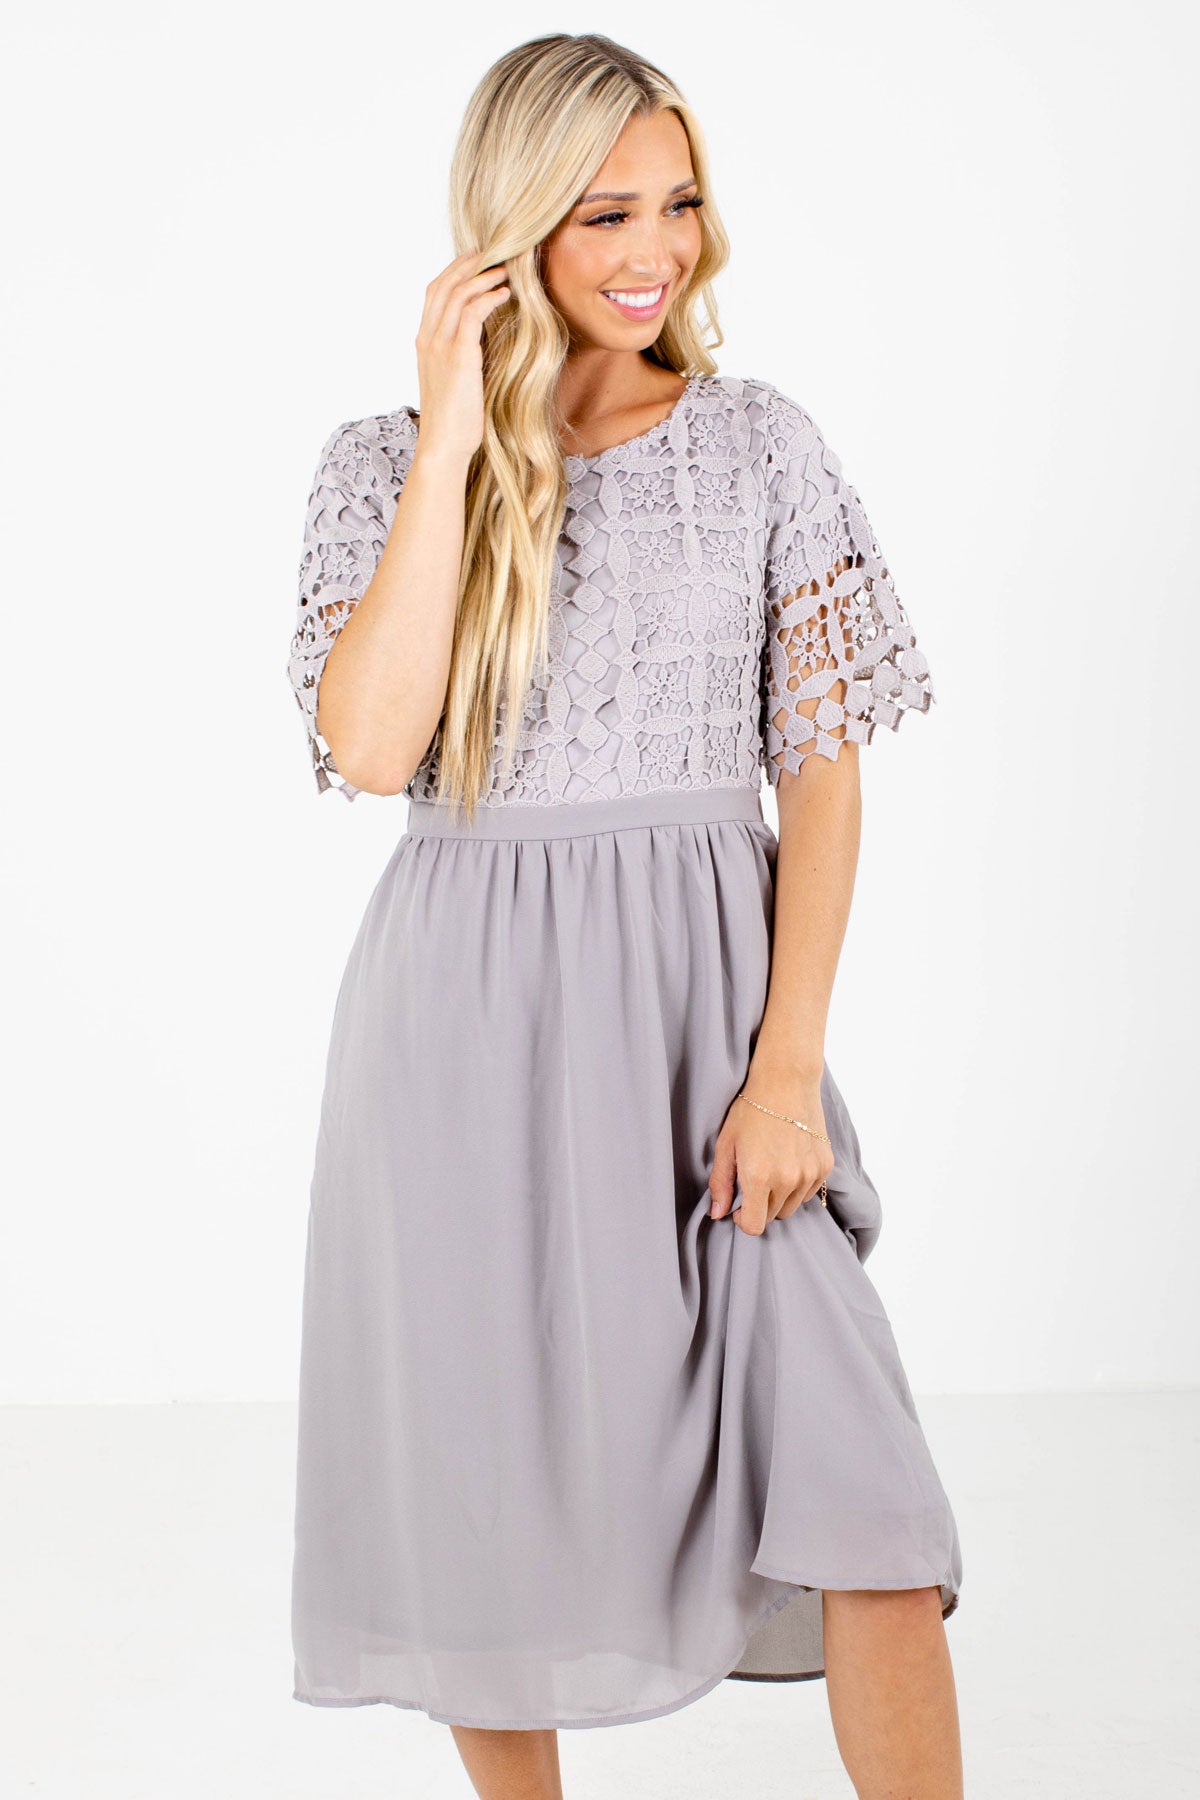 Gray Crochet Lace Bodice Boutique Midi Dresses for Women